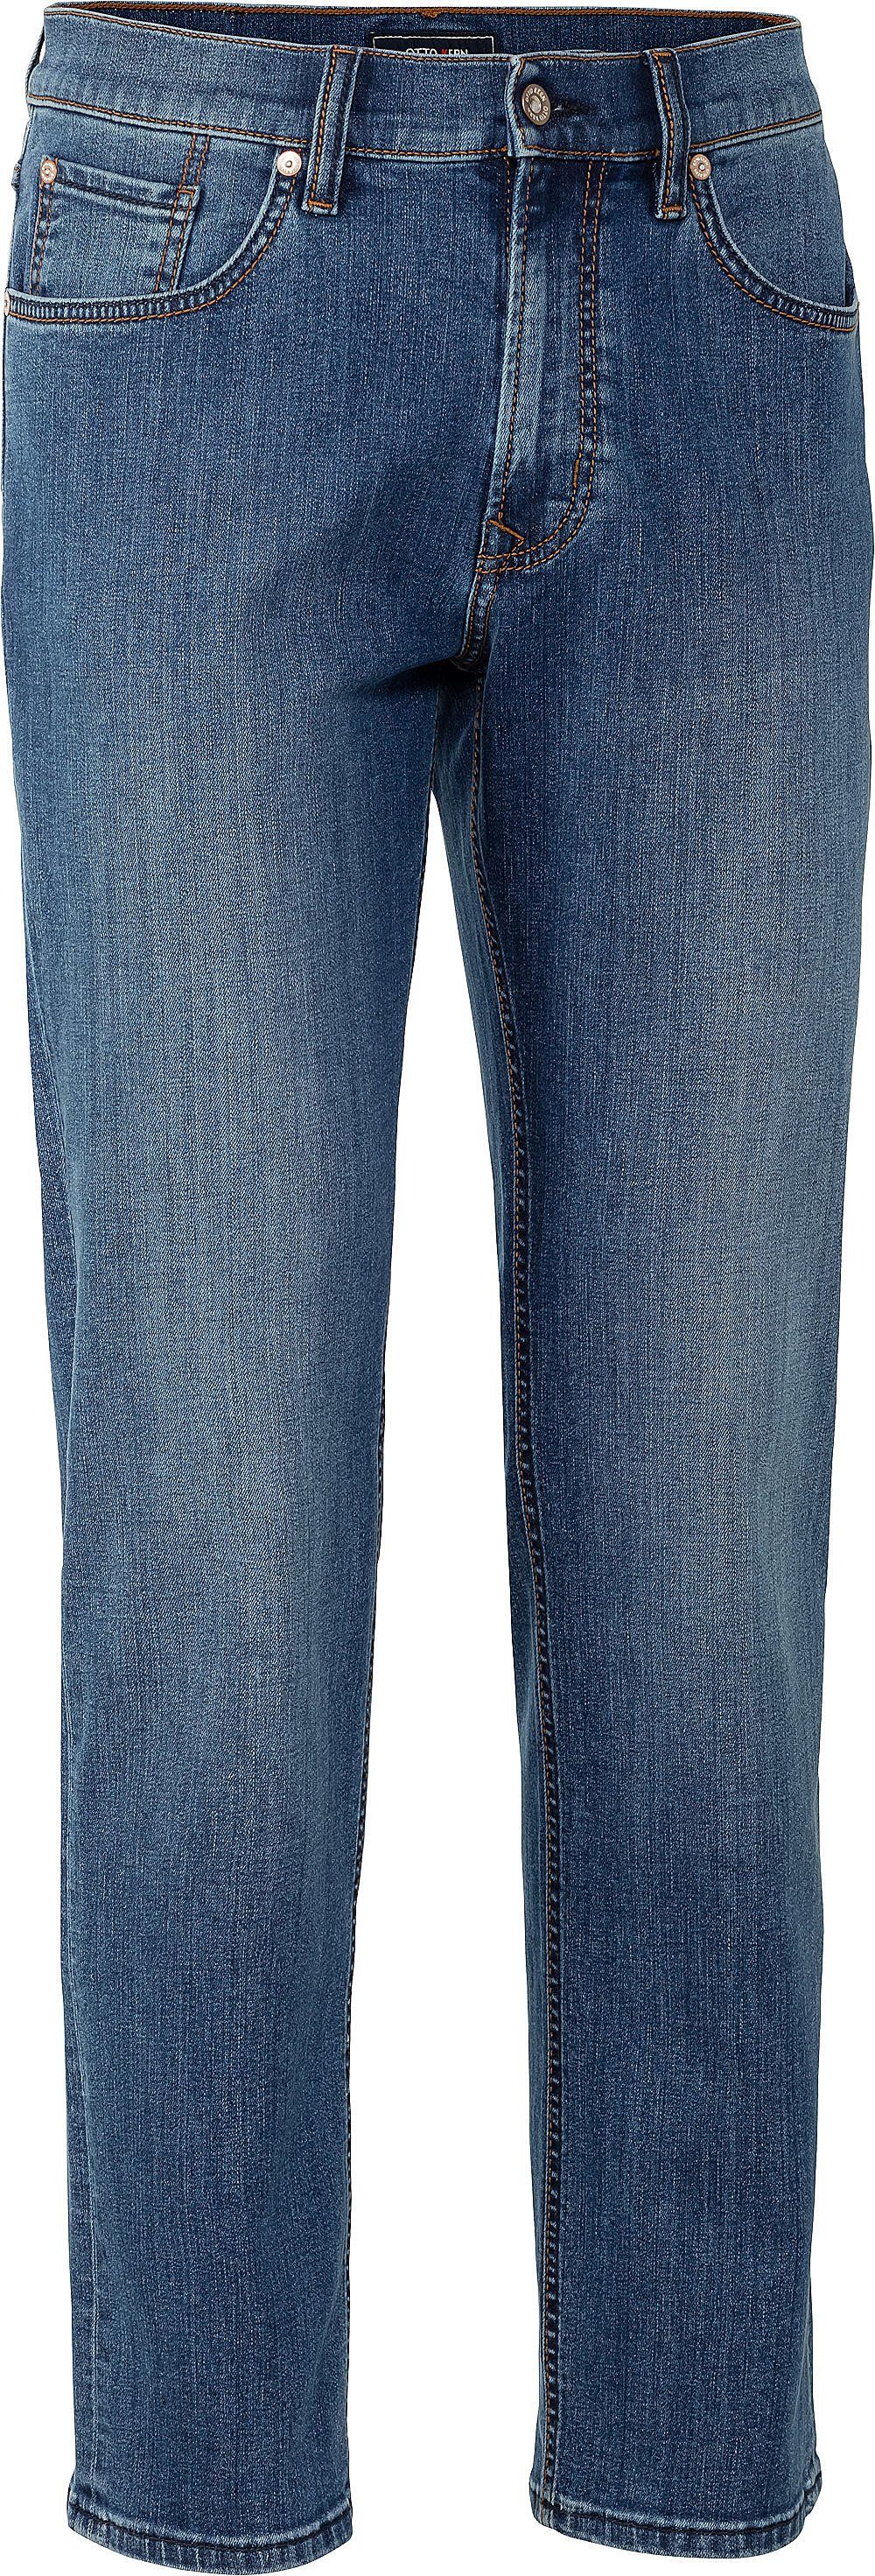 Otto Kern Kern Stretch-Jeans mittelblau perfekter Sitz Stretch-Anteil mit